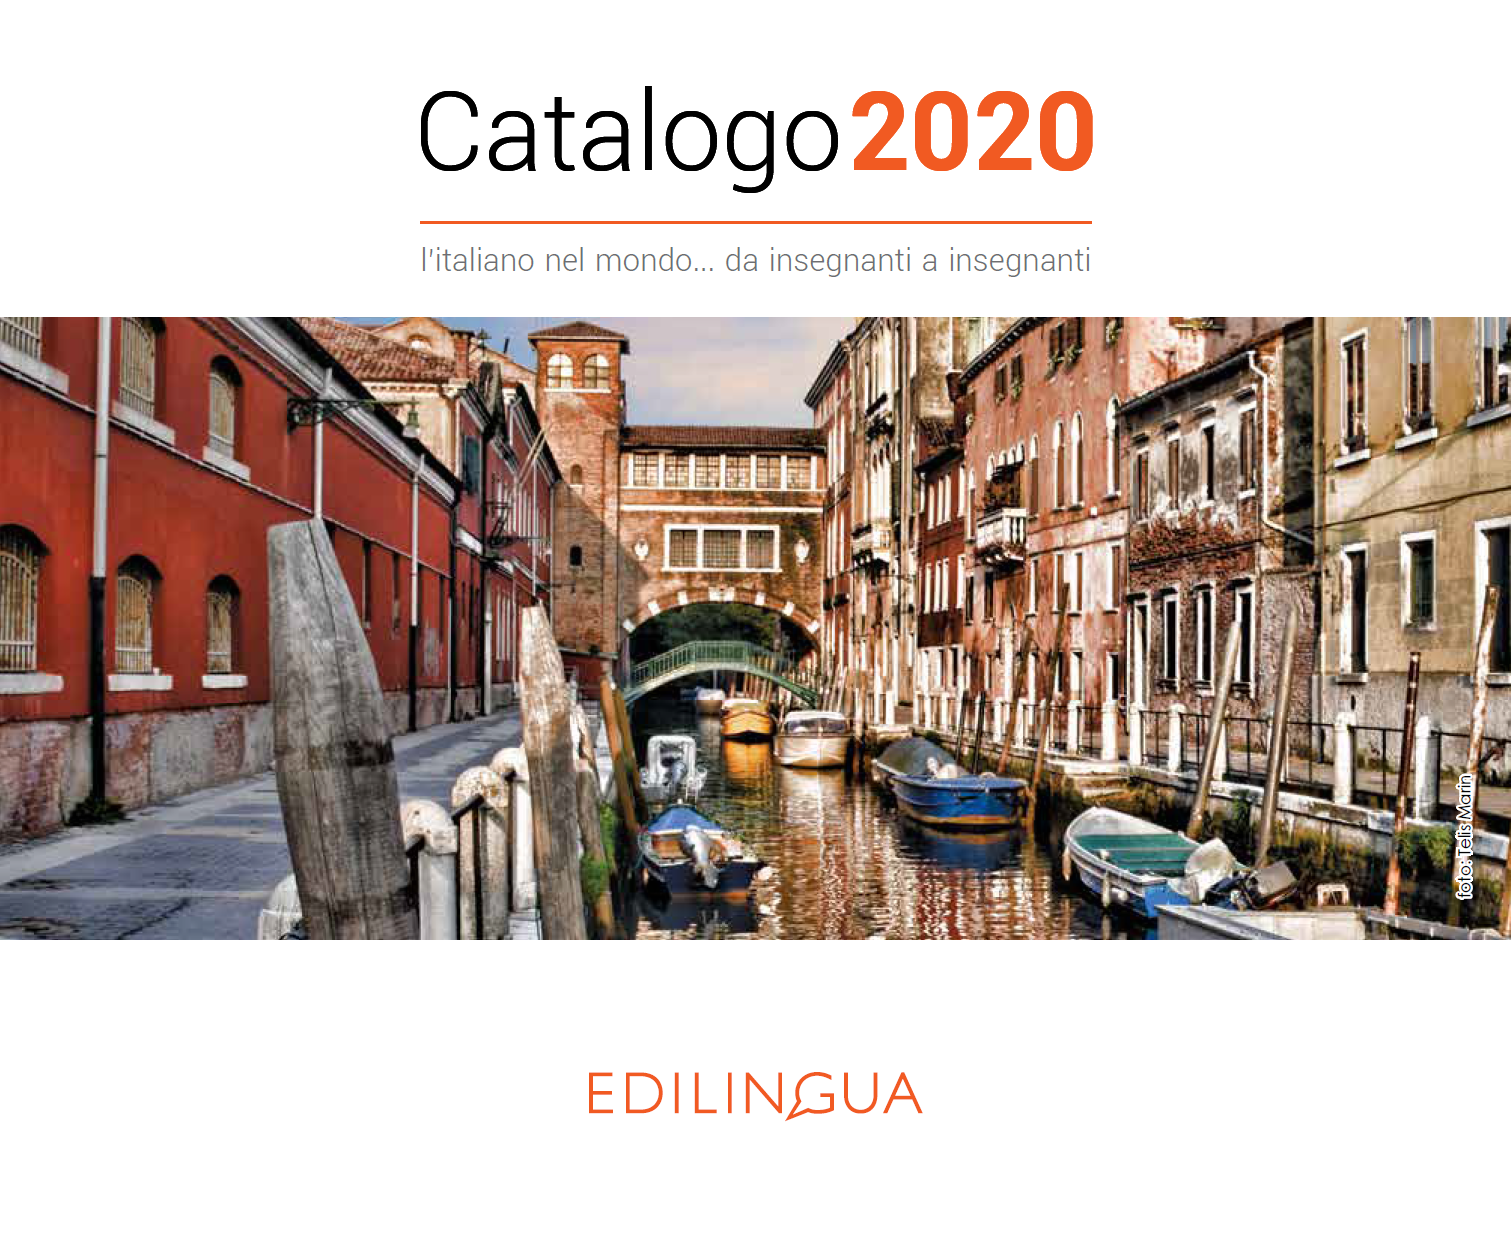 Catálogo Edilingua 2020